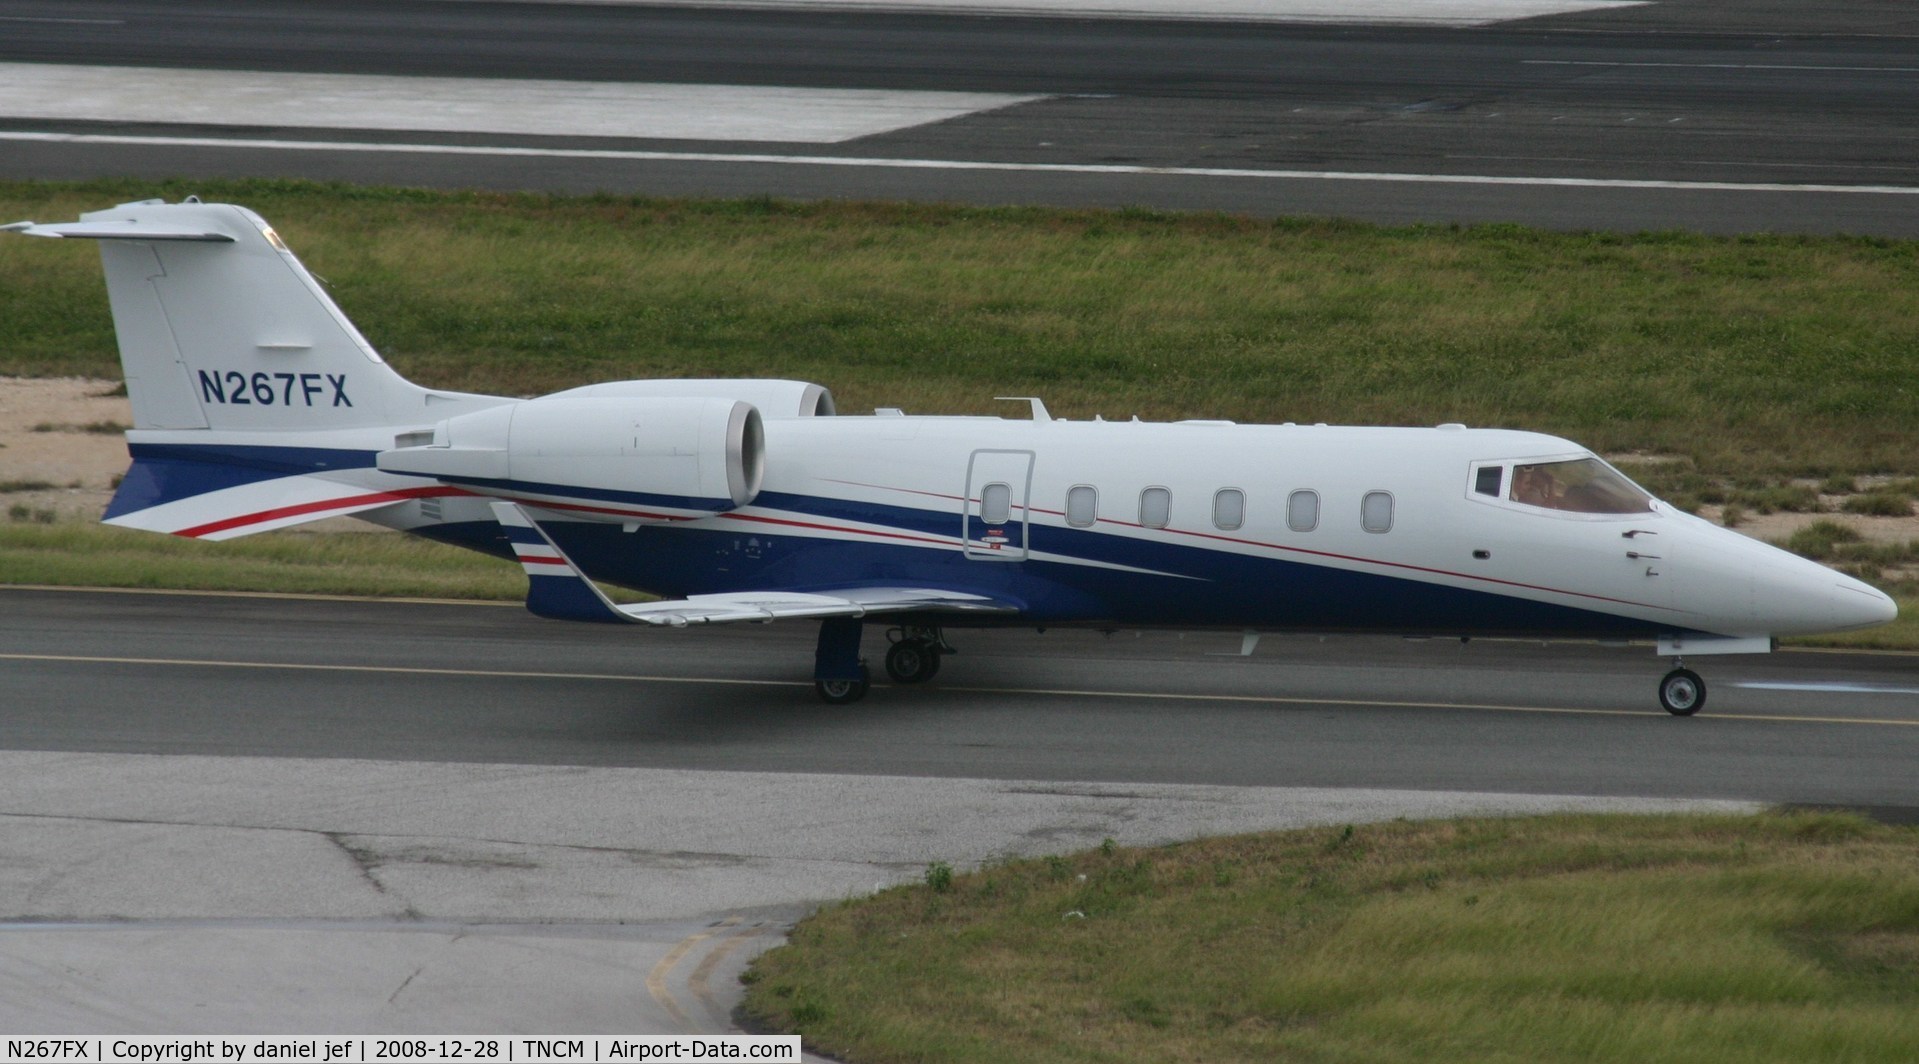 N267FX, 2008 Learjet Inc 60 C/N 356, taxing runway 10